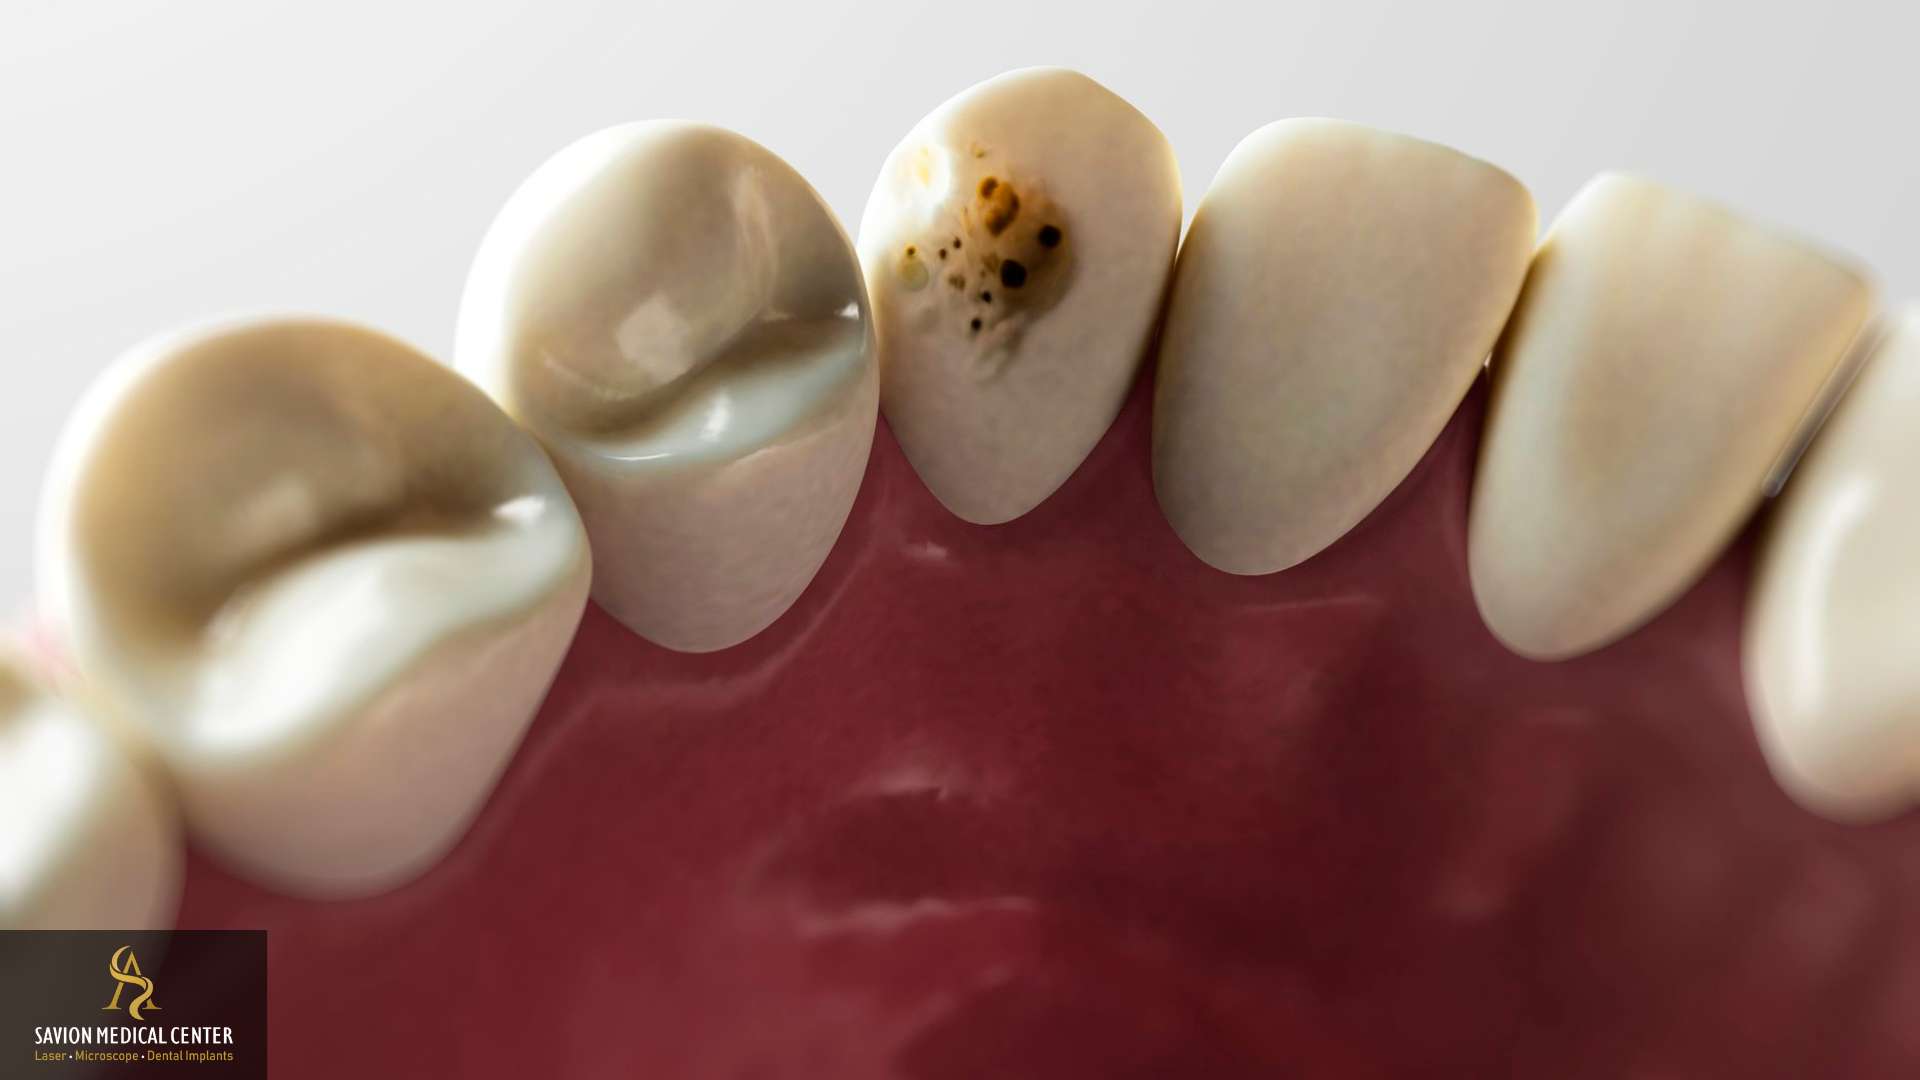 טיפול בעששת בשיניים | סביון מדיקל סנטר